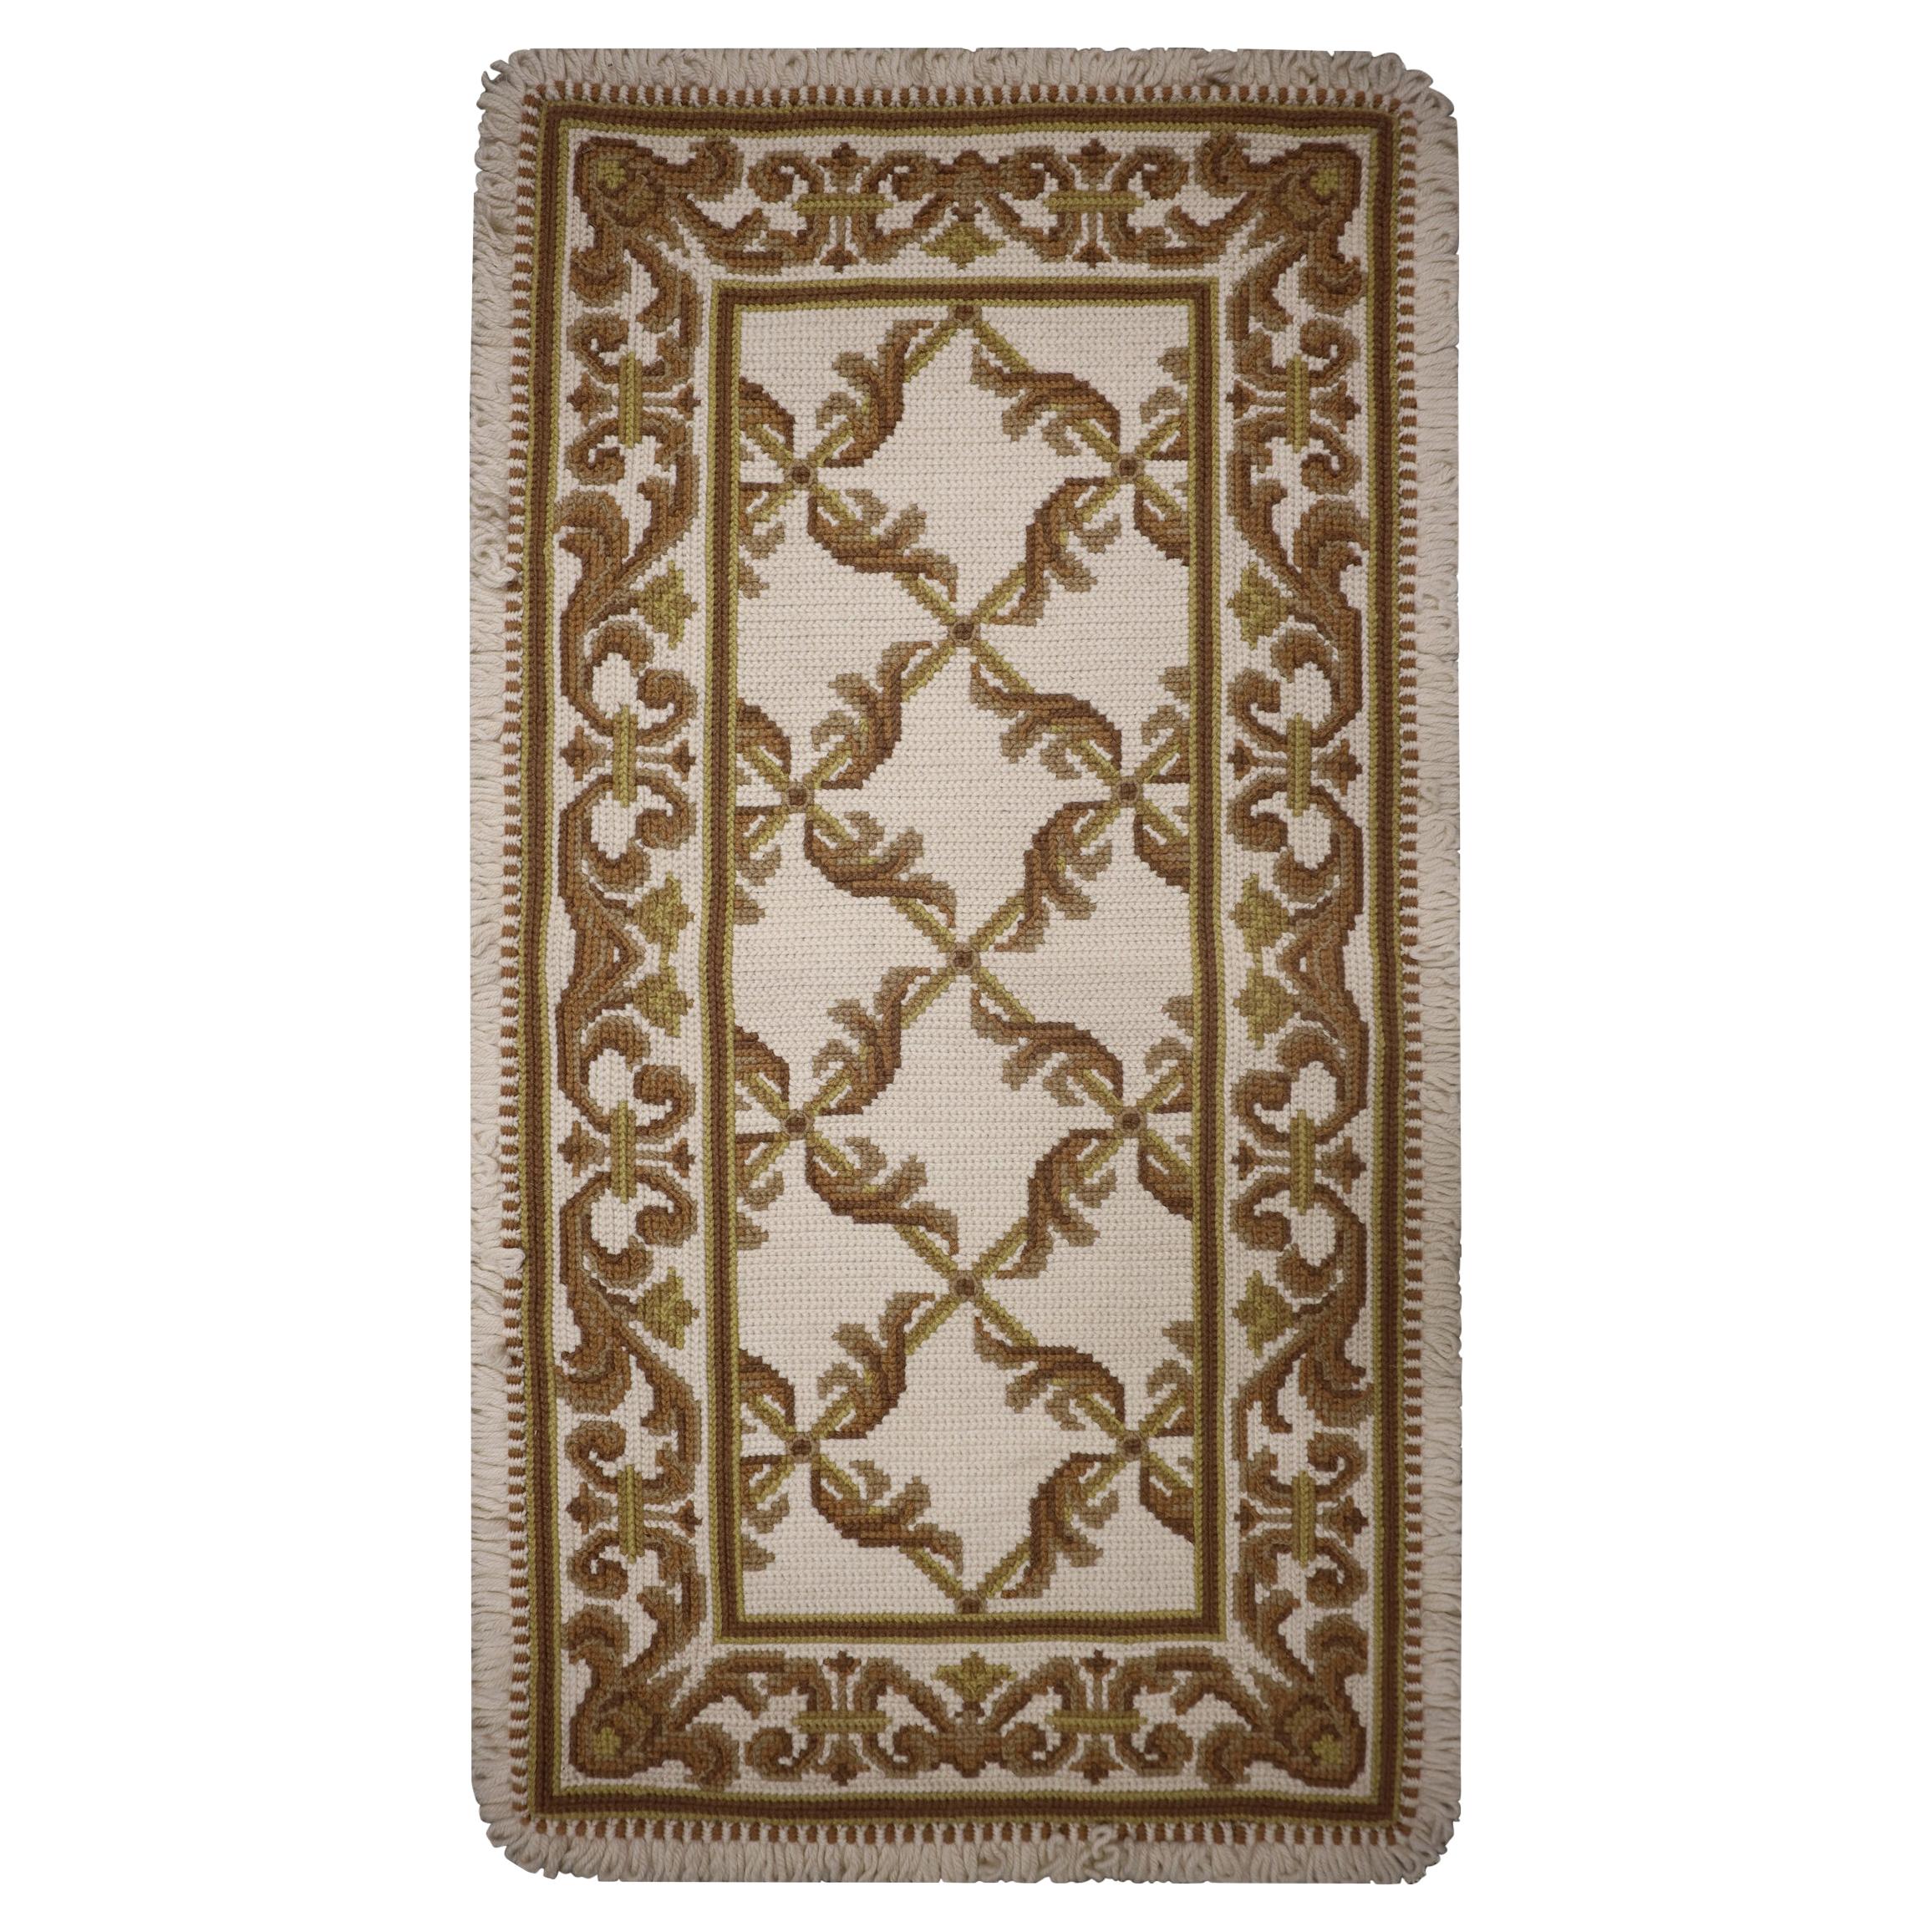 Handgewebter traditioneller Teppich im portugiesischen Stil in Beige und Creme mit Gobelinstickerei